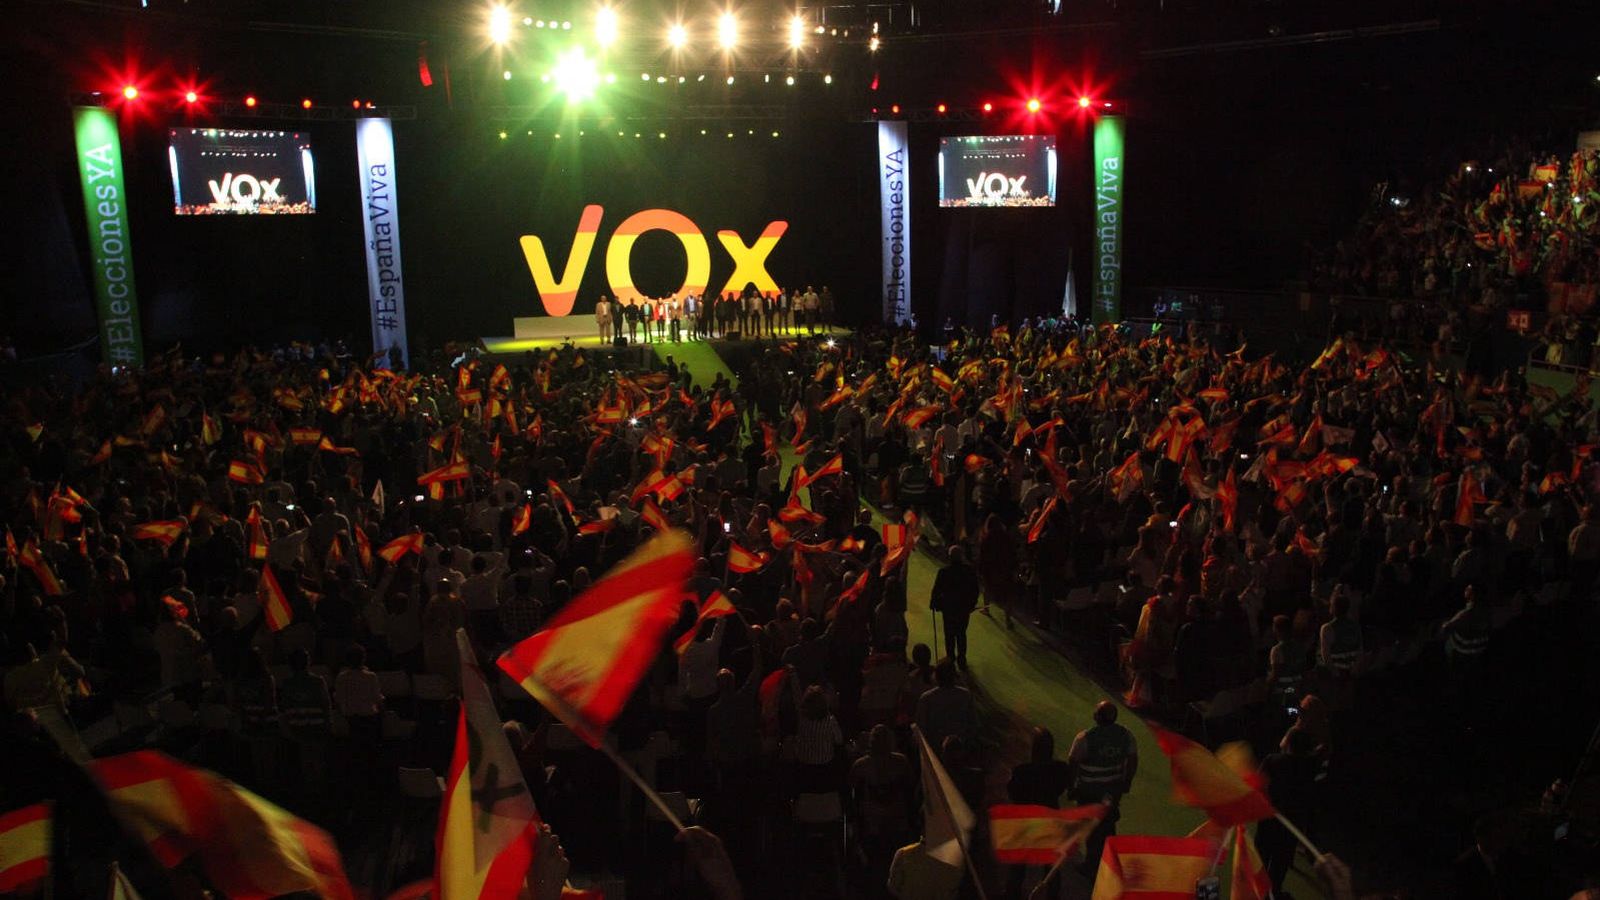 Foto: Imagen del acto de VOX celebrado este domingo en Madrid. (Flickr: Vox)